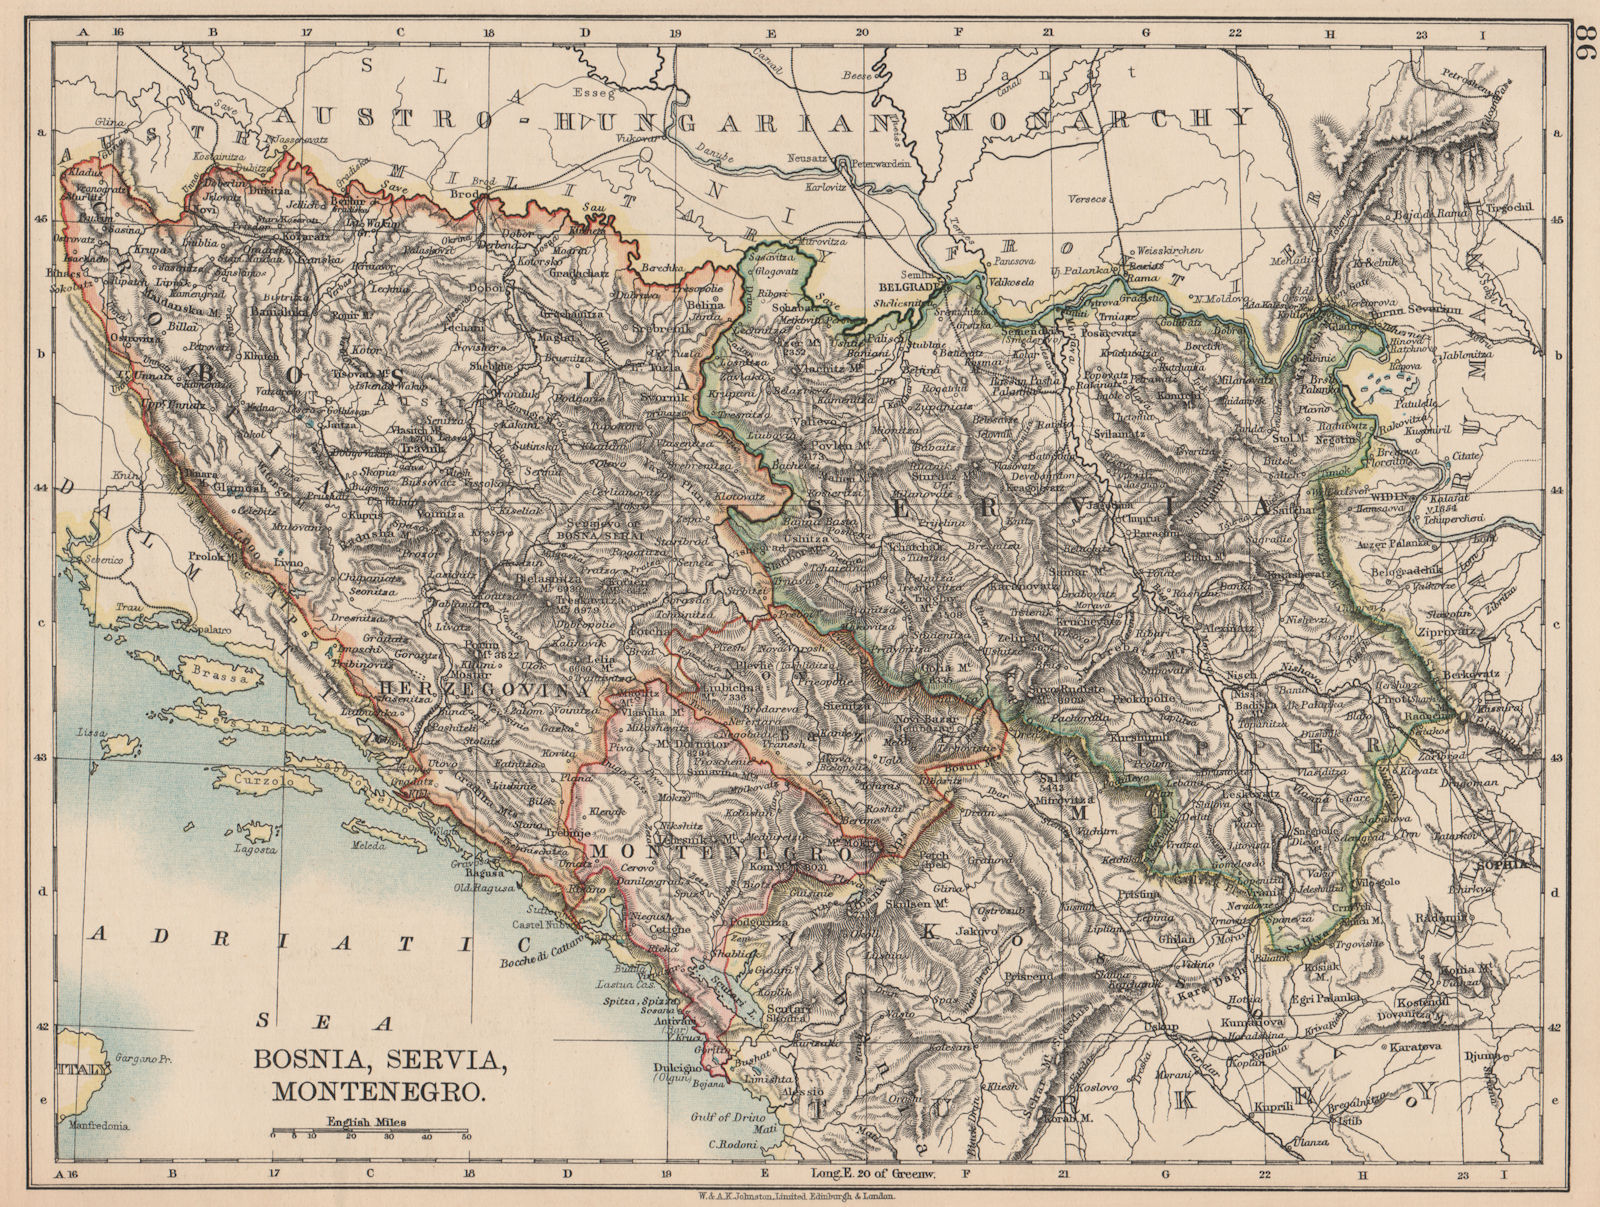 BOSNIA SERVIA MONTENEGRO. Balkans Serbia Croatia Herzegovina. JOHNSTON 1906 map